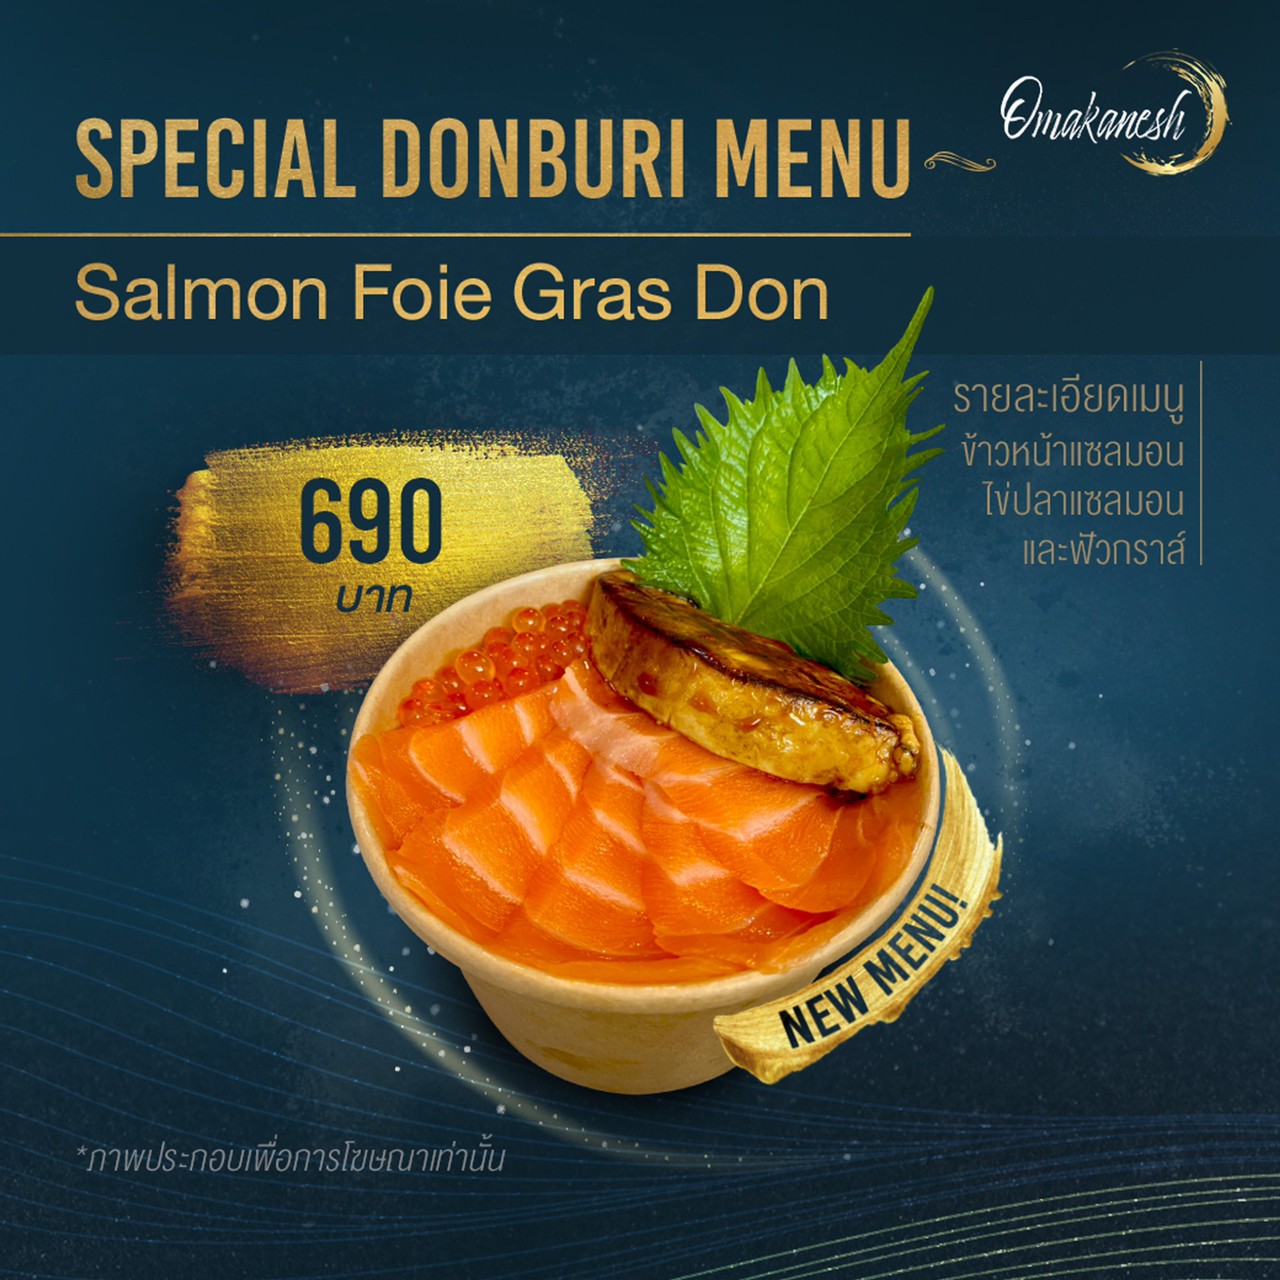 Salmon Foi Gras Don ข้าวหน้าแซลมอน ไข่ปลาและฟัวกราส์